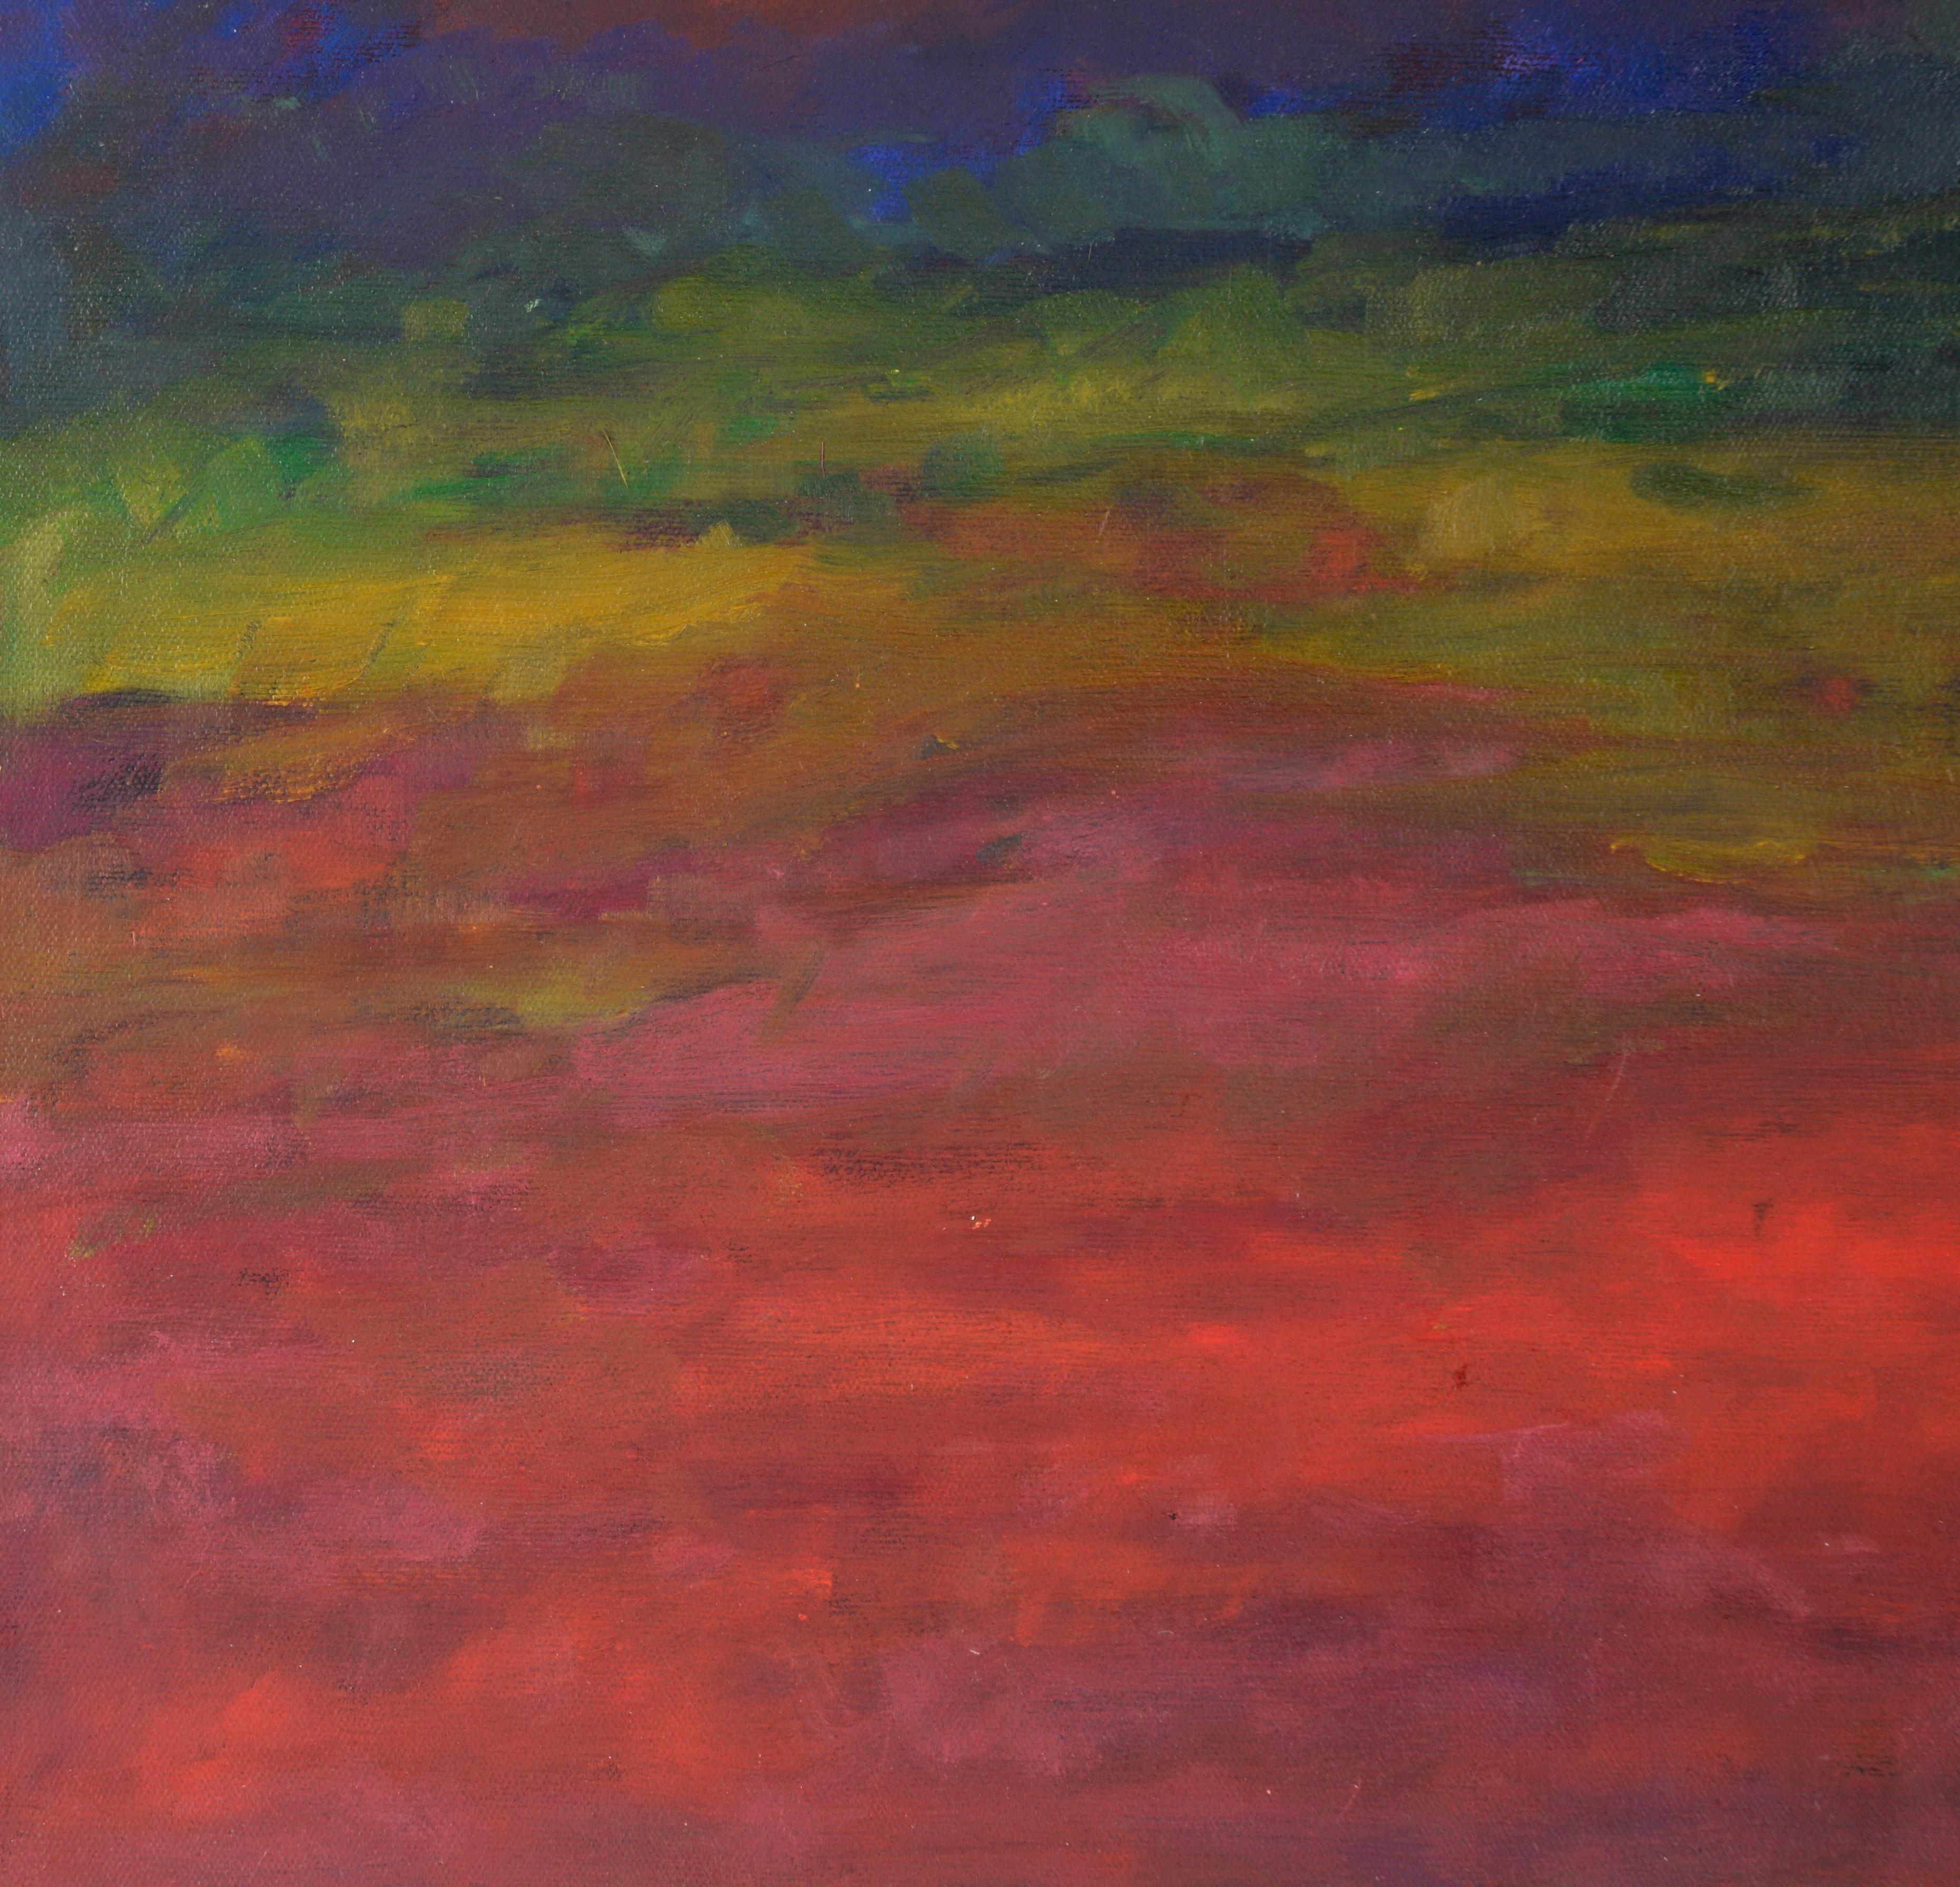 Rot glühender Sonnenuntergang - abstrahierte Landschaft in Acryl auf Leinwand

Lebendiger Sonnenuntergang von einer unbekannten Künstlerin an der mittelkalifornischen Küste, Maria Pavao Hadsell (Portugal/Amerikaner). Im Vordergrund dieses Bildes